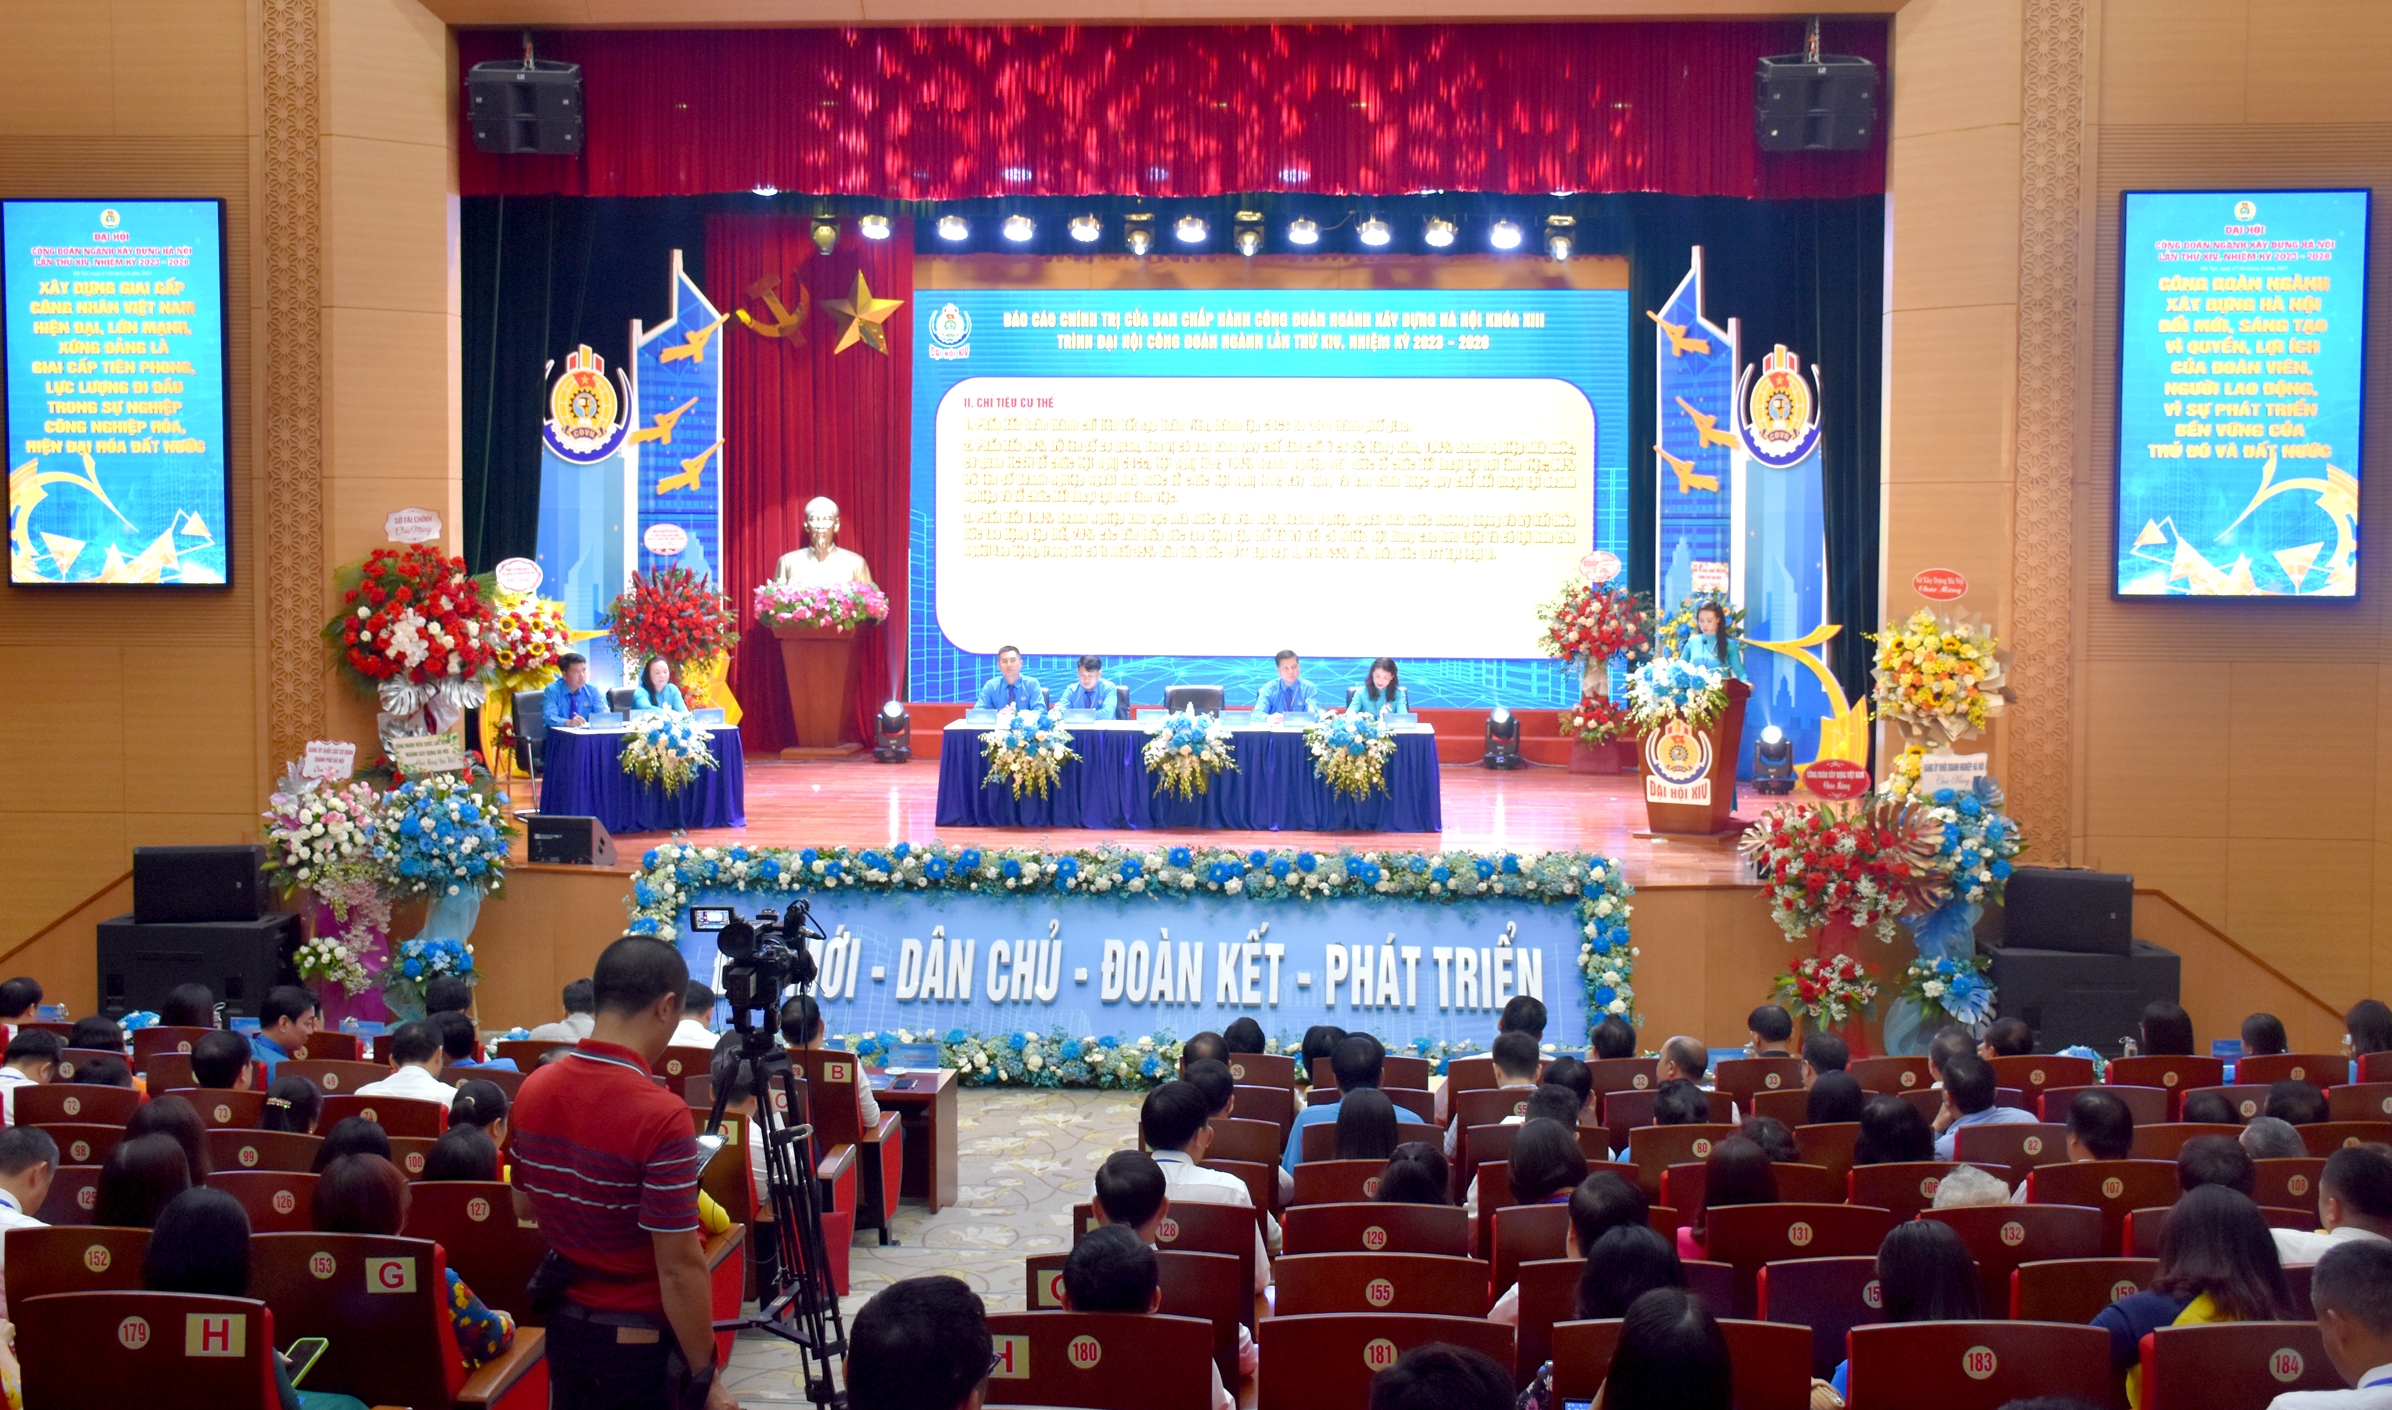 TRỰC TUYẾN: Đại hội Công đoàn ngành Xây dựng Hà Nội lần thứ XIV: "Đổi mới - Dân chủ - Đoàn kết - Phát triển"